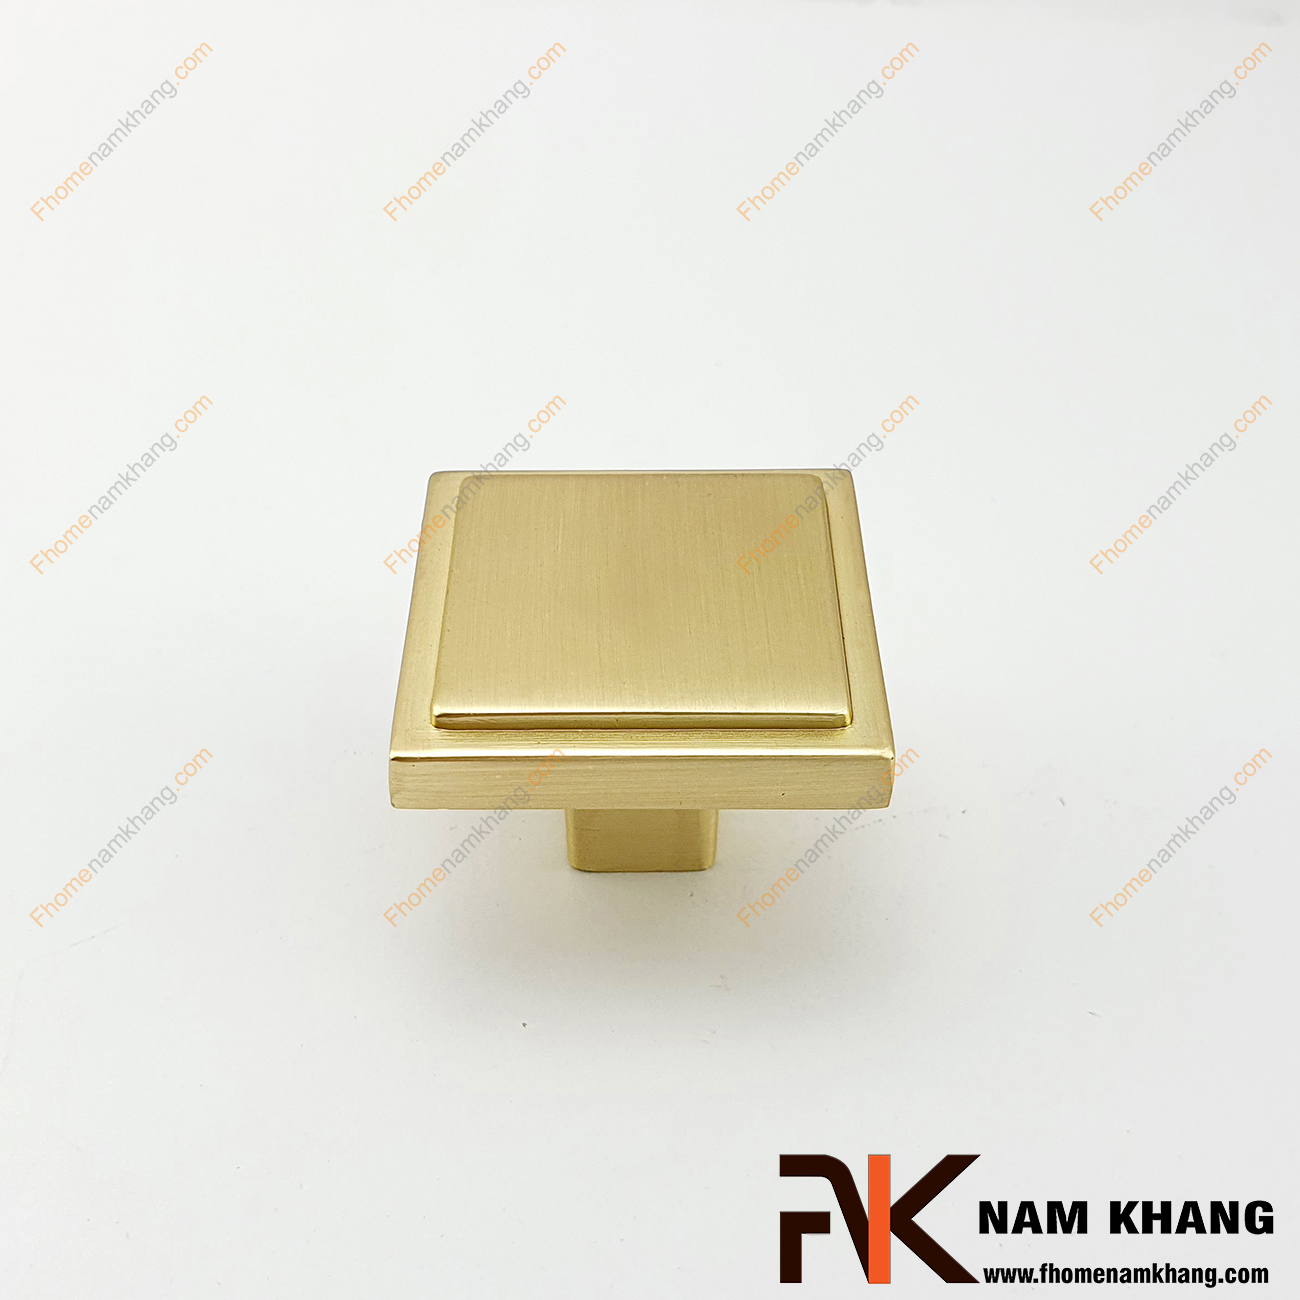 Tay nắm tủ dạng vuông màu vàng mờ NK219-VM có thiết kế đơn giản từ hợp kim cao cấp với khuôn dạng đầu vuông và đế tròn đứng. Sản phẩm giúp thực hiện thao tác đóng mở cánh cửa tủ trở nên dễ dàng và thuận tiện. 